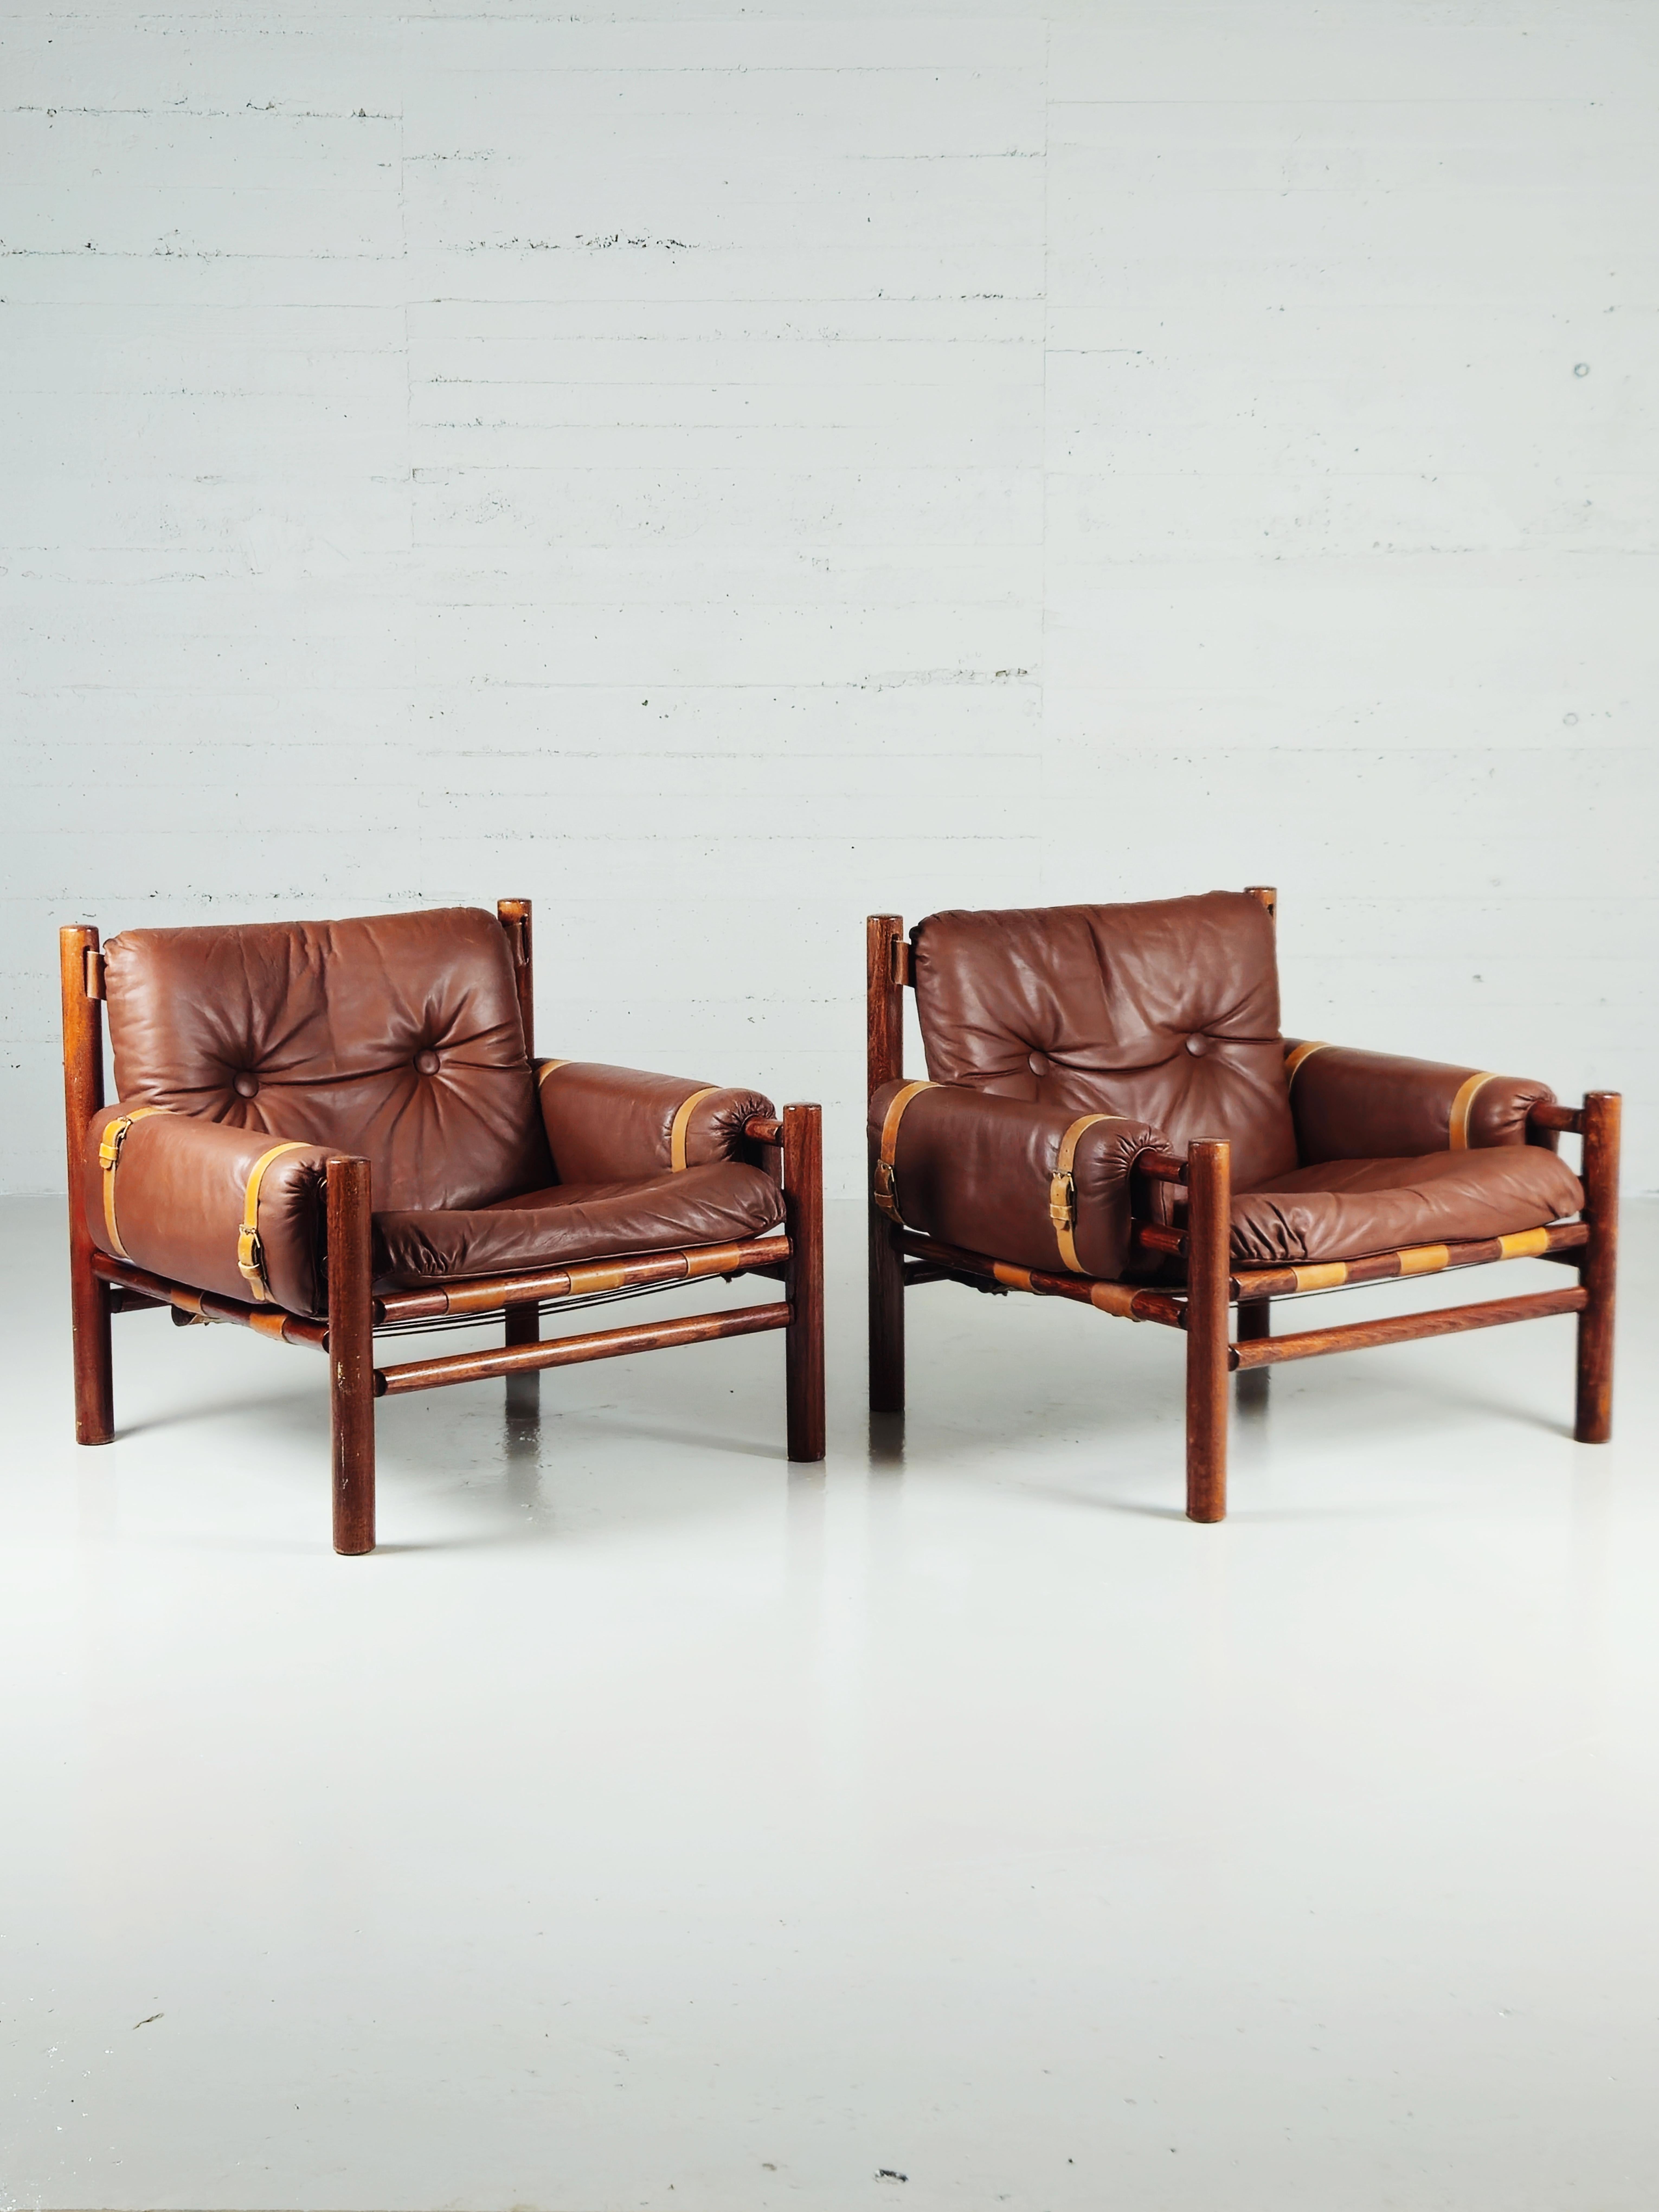 Sehr seltenes Paar Safaristühle, hergestellt von Bruksbo, Norwegen, in den 1970er Jahren. 

Hergestellt aus Buche mit braunem Leder mit schönen Details. 

In Anlehnung an die Lounge-Sessel des schwedischen Designers Arne Norell. 